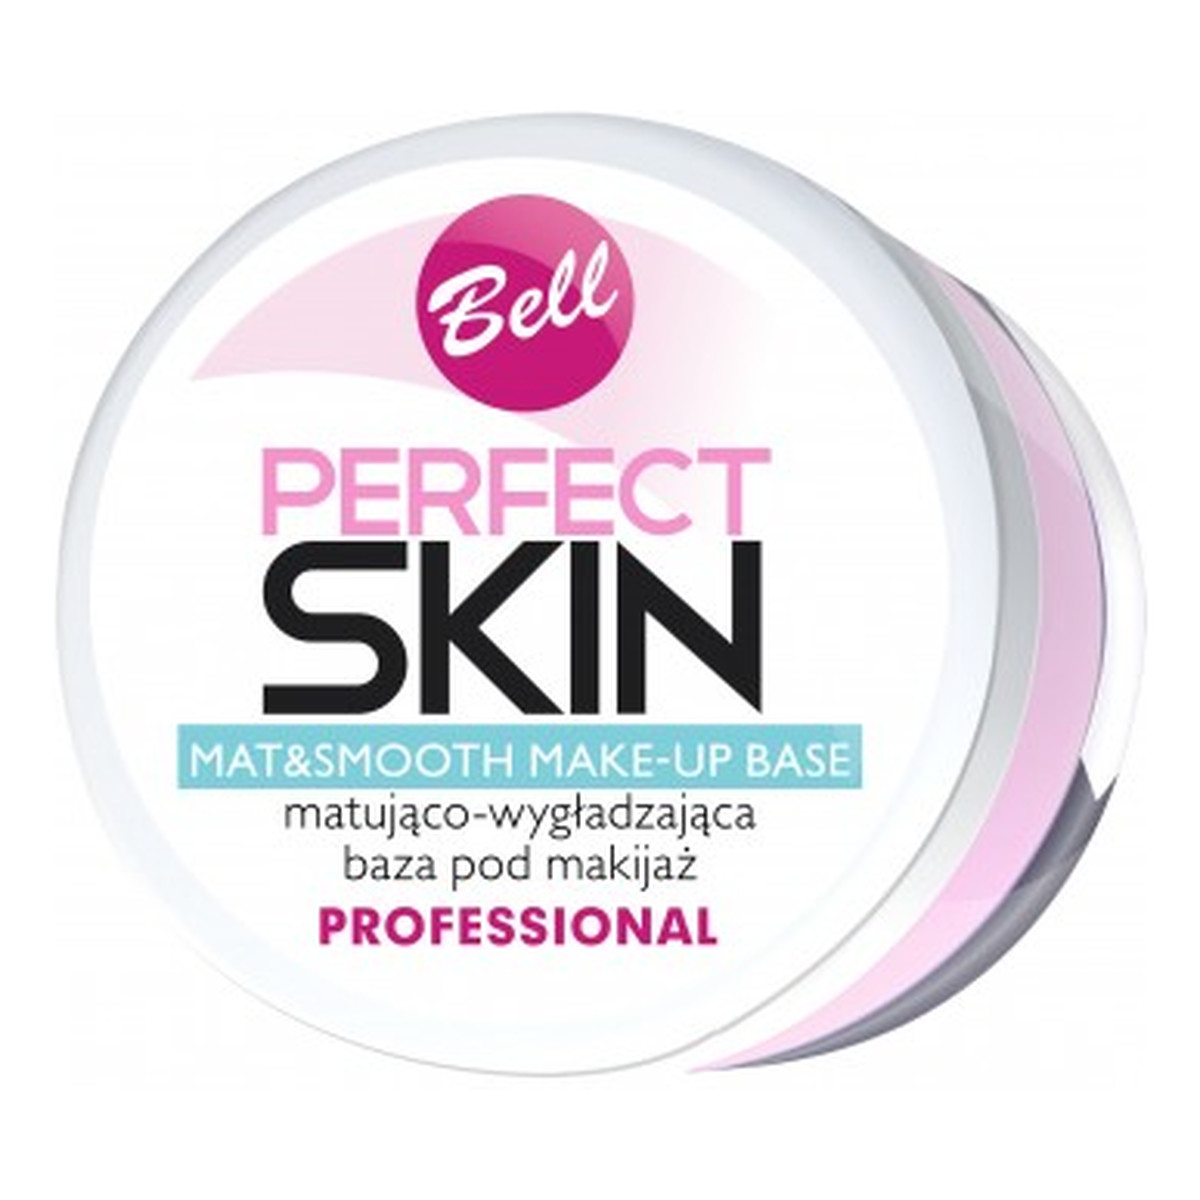 Bell Perfect Skin Baza Pod Makijaż 12g